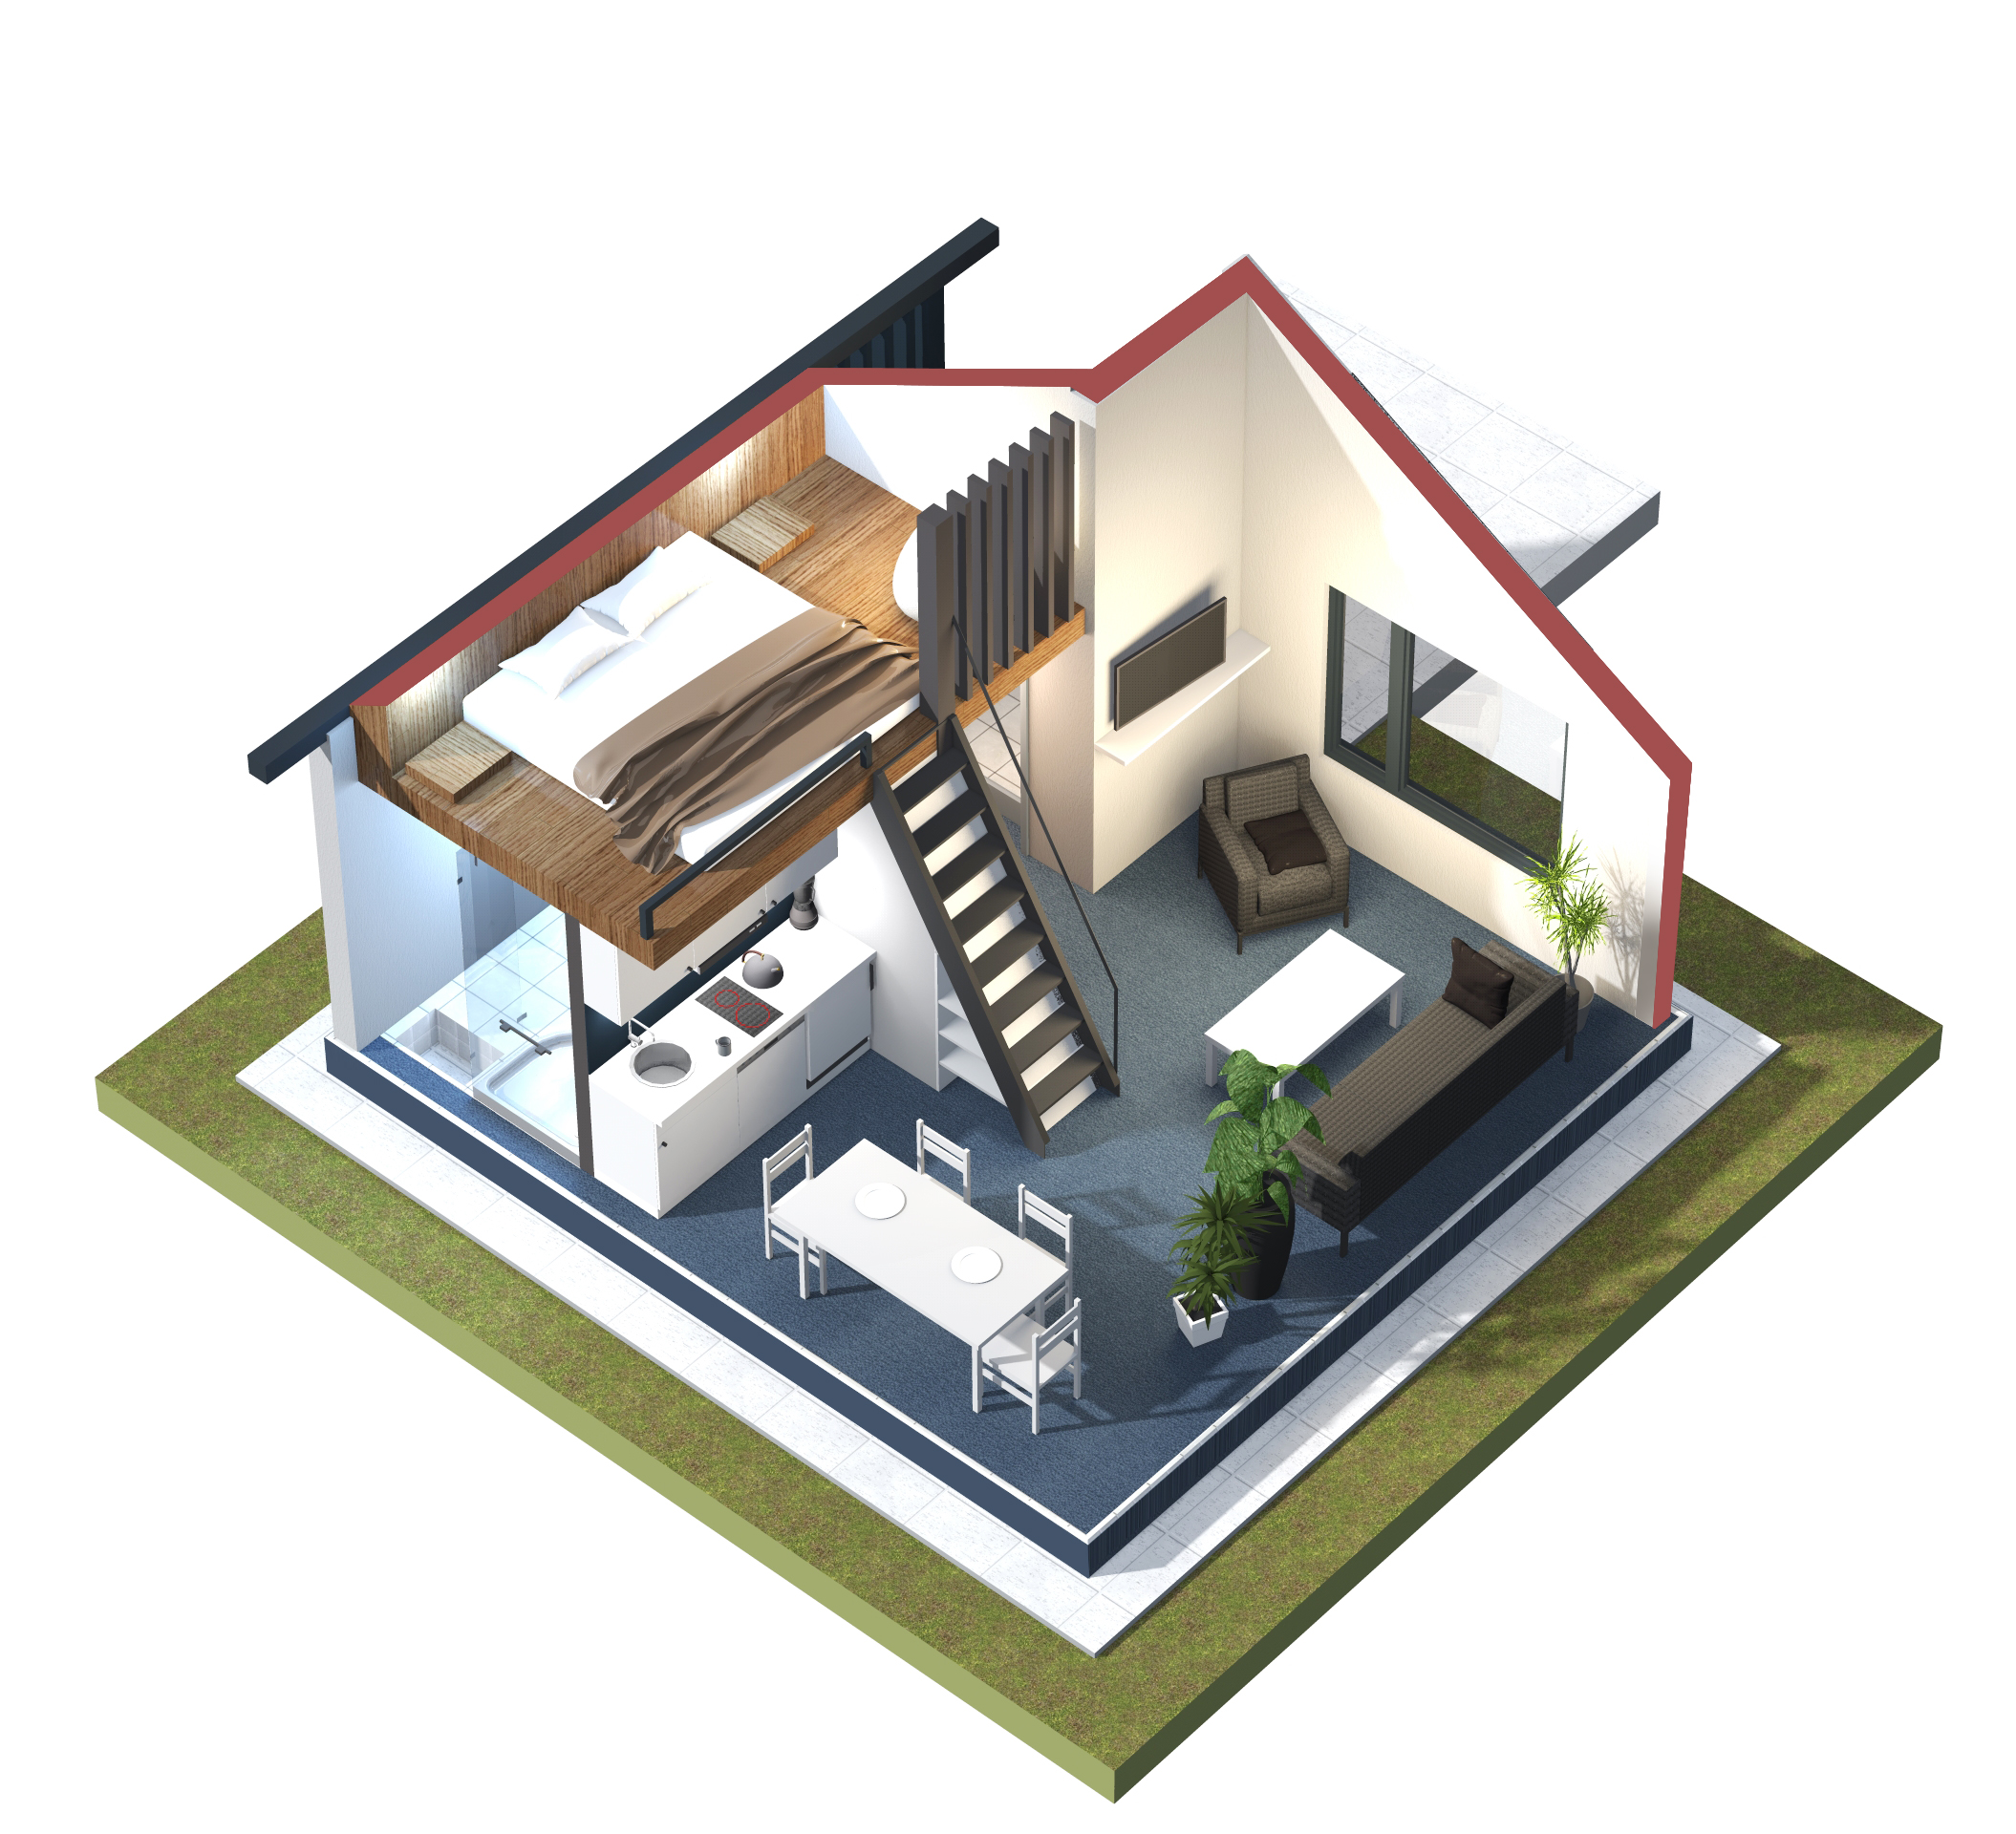 Perspektivische Darstellung der Innenräume eines Wohnhauses zur expliziten Veranschaulichung der Größenverhältnisse